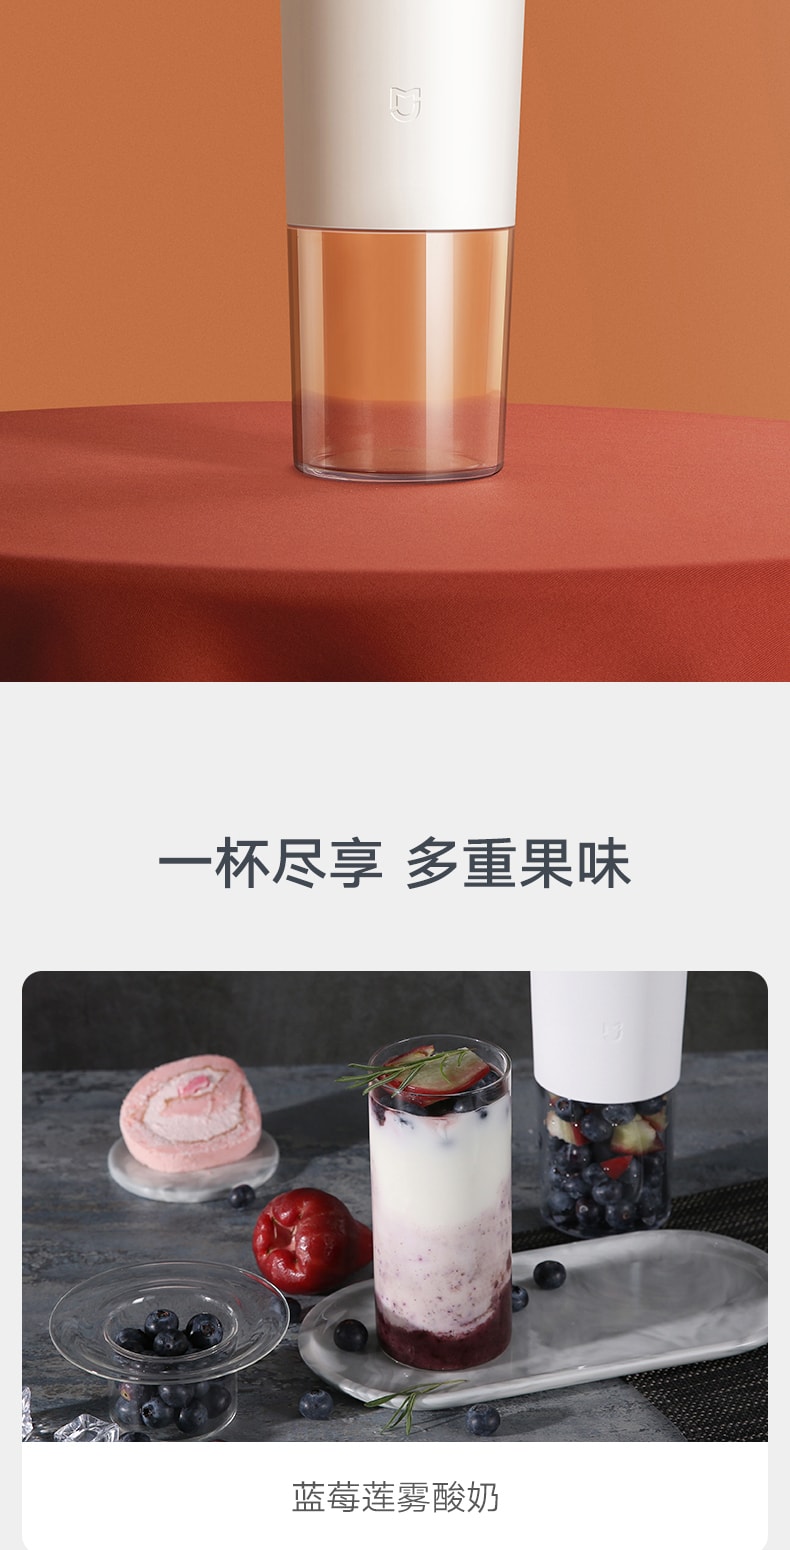 【中国直邮】小米米家随行榨汁机 果汁机 白色 轻松营养